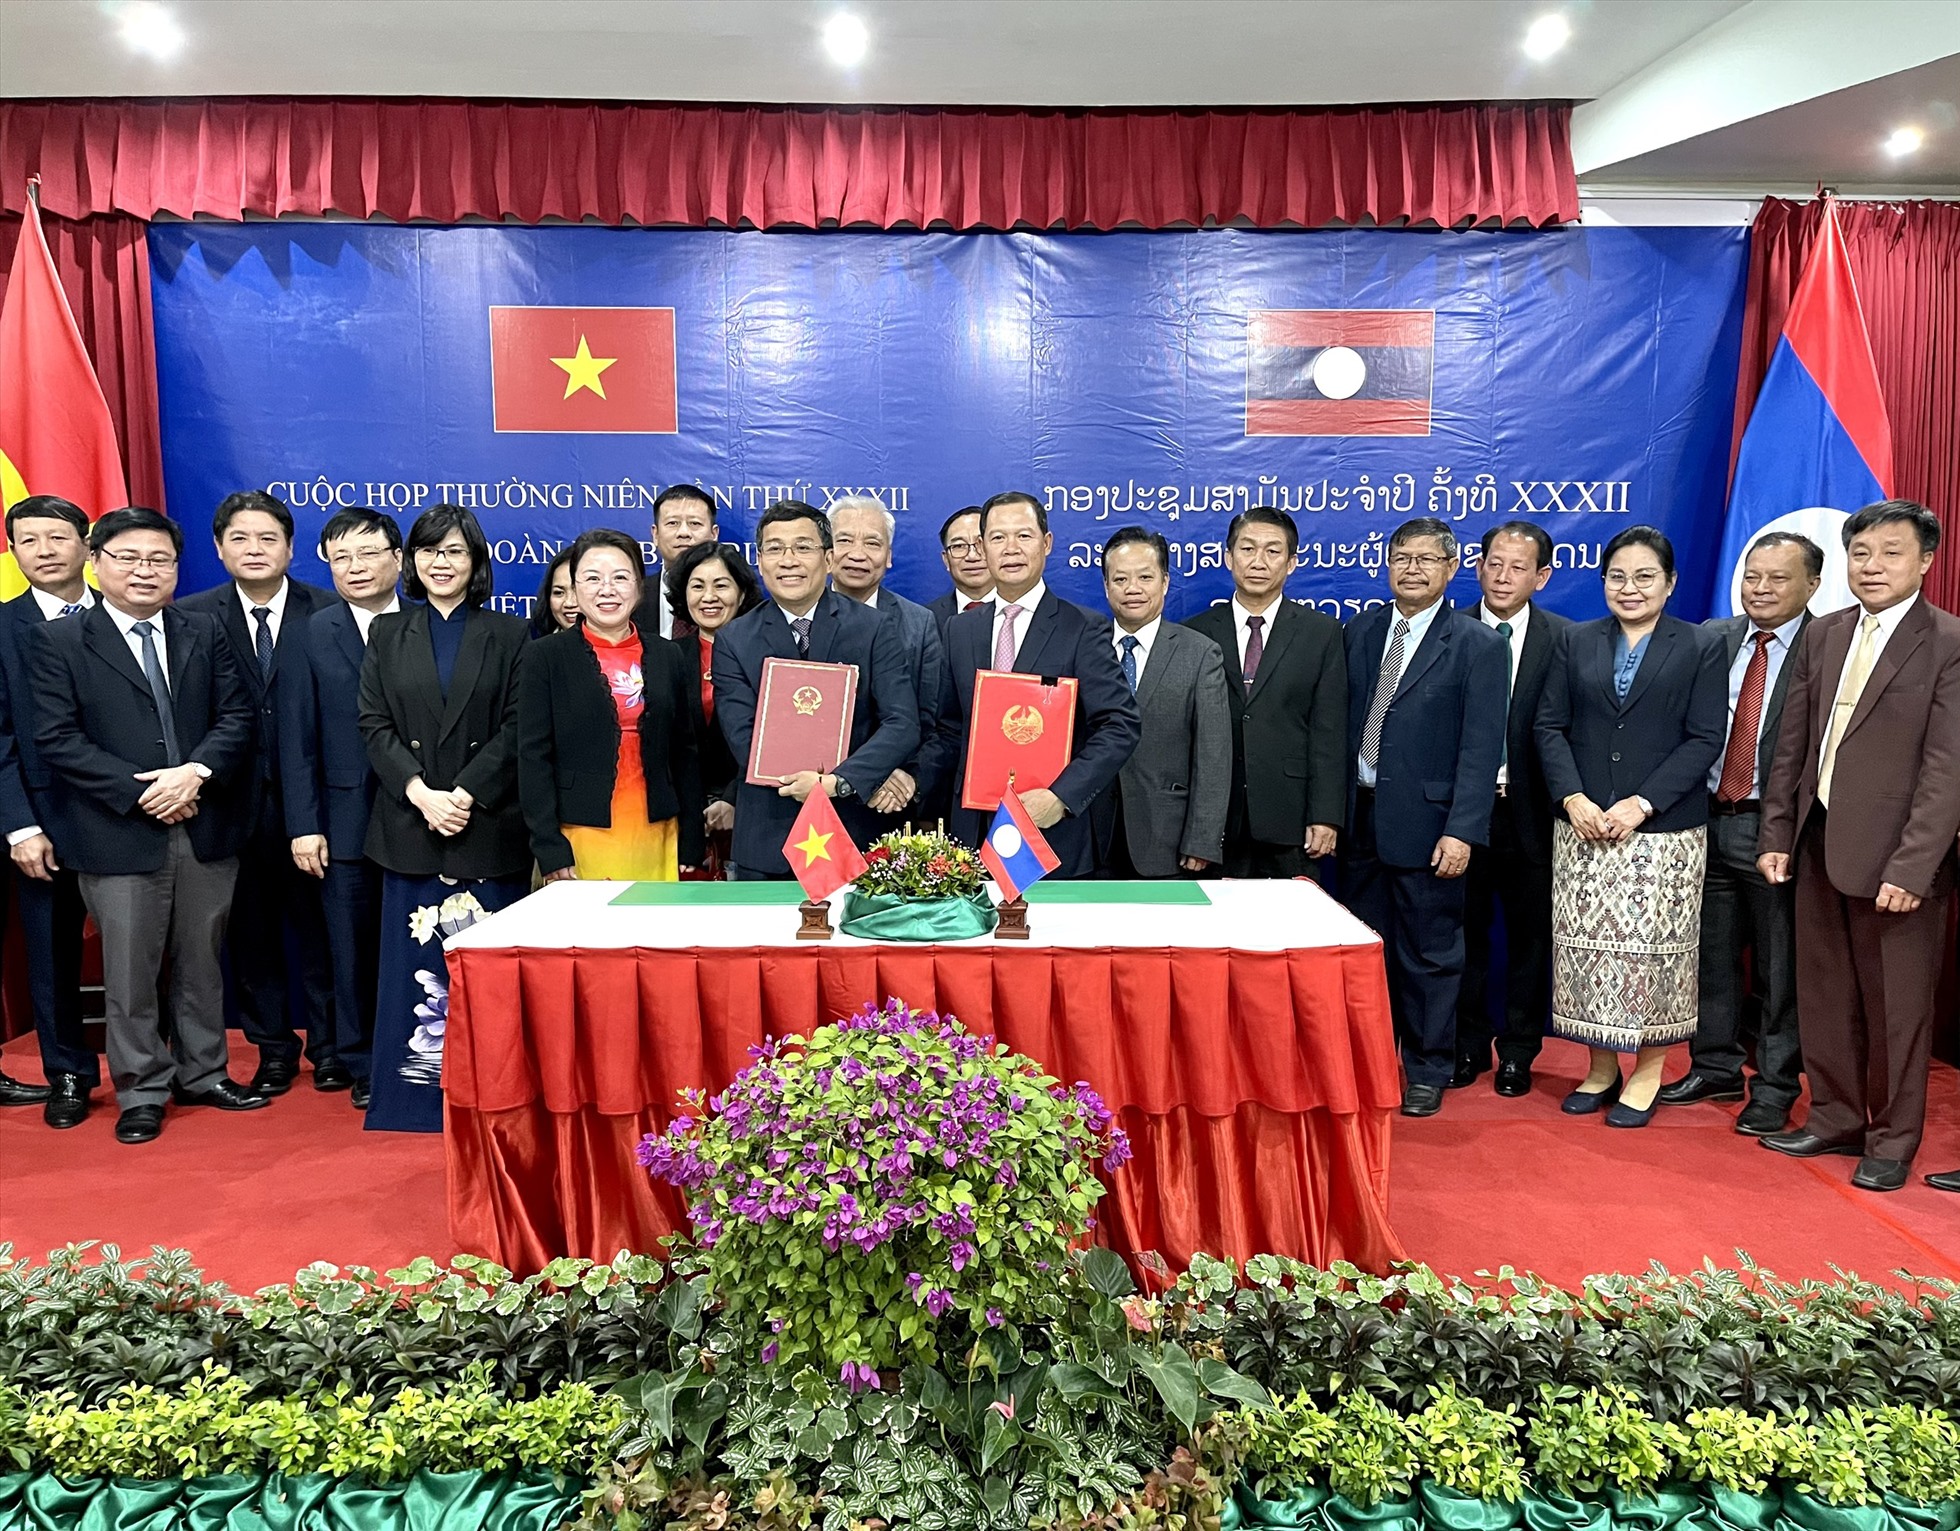 Cuộc họp giữa hai đoàn đại biểu biên giới Việt Nam - Lào diễn ra tại thành phố Luang Prabang, Lào trong 2 ngày 19 và 20.12. Ảnh: Bộ Ngoại giao